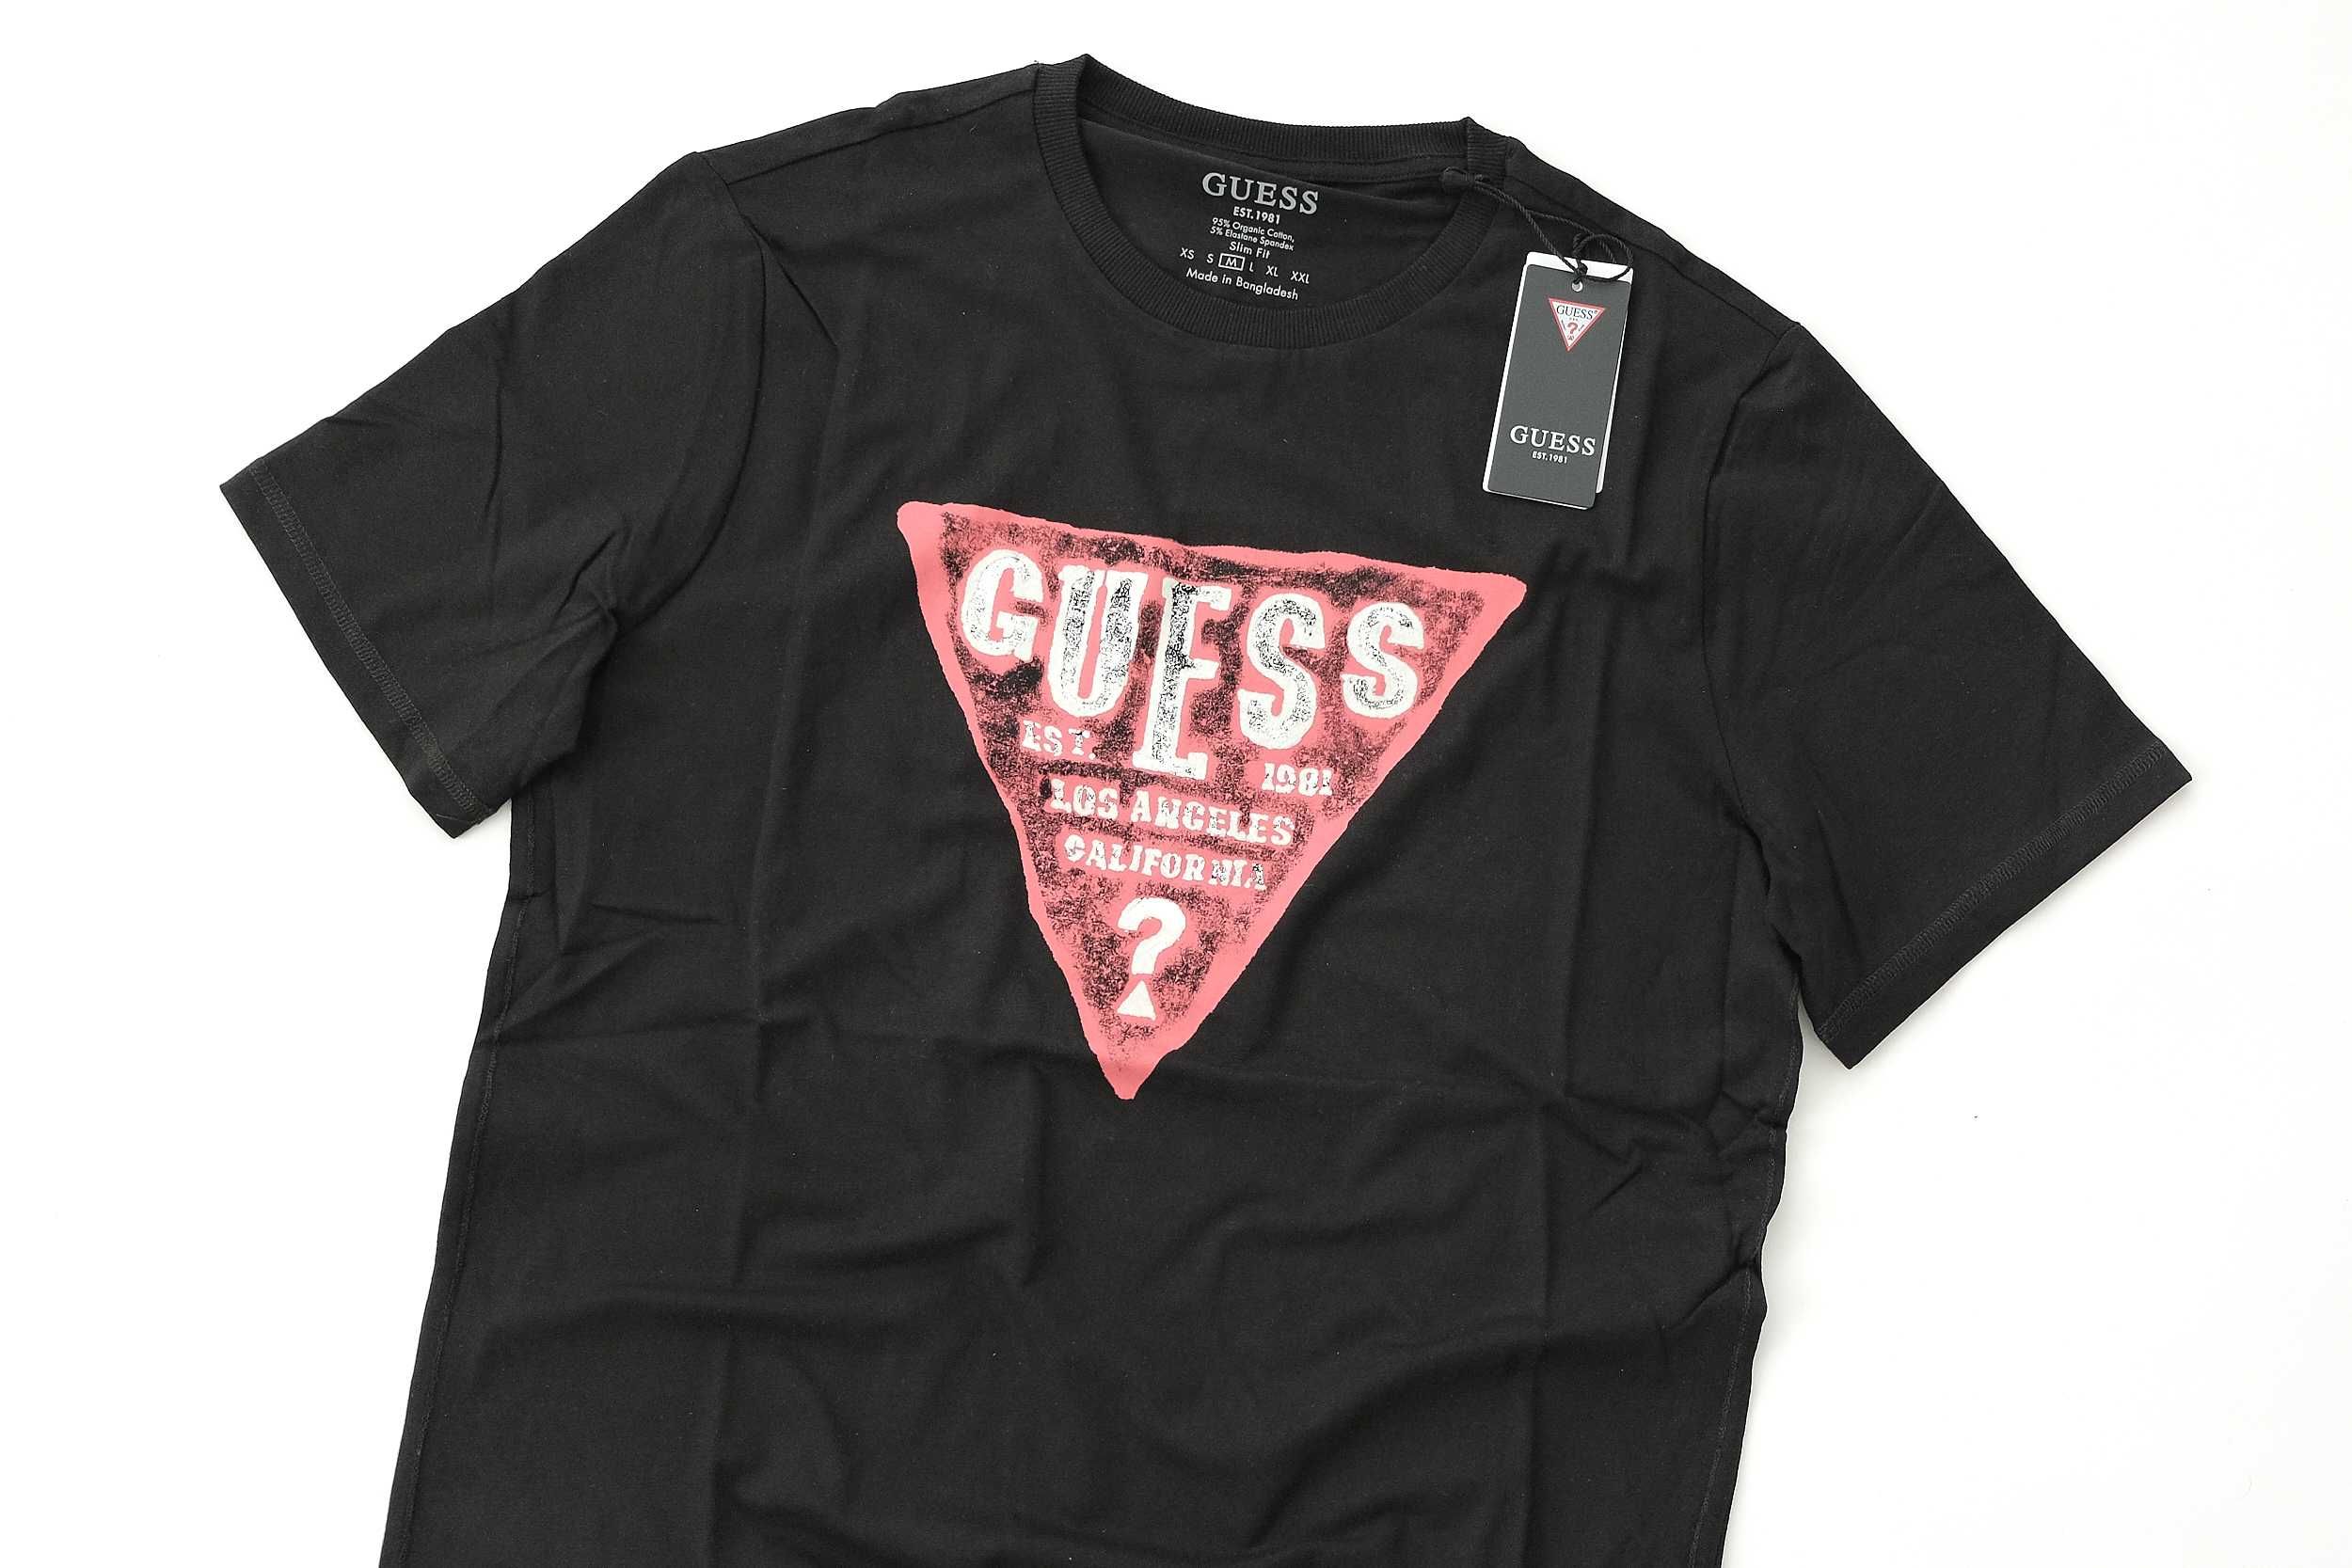 ПРОМО GUESS  М  размери-Оригинална черна тениска със щампа и лого